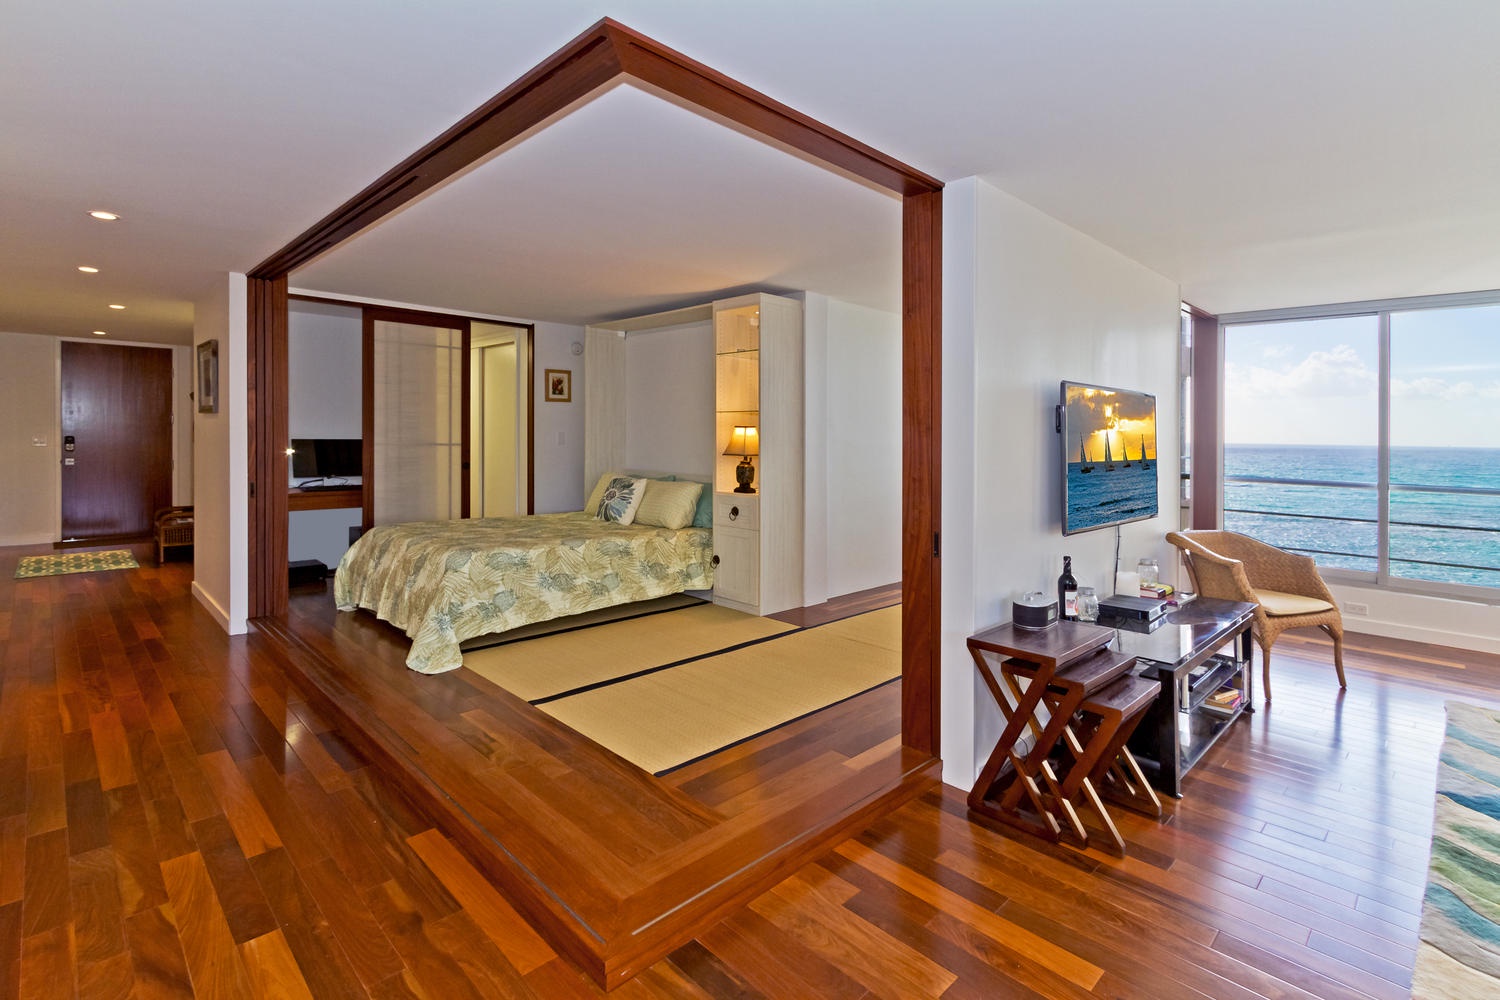 Honolulu Vacation Rentals, Executive Gold Coast Oceanfront Suite - Guest bedroom with queen-size Murphy bed.